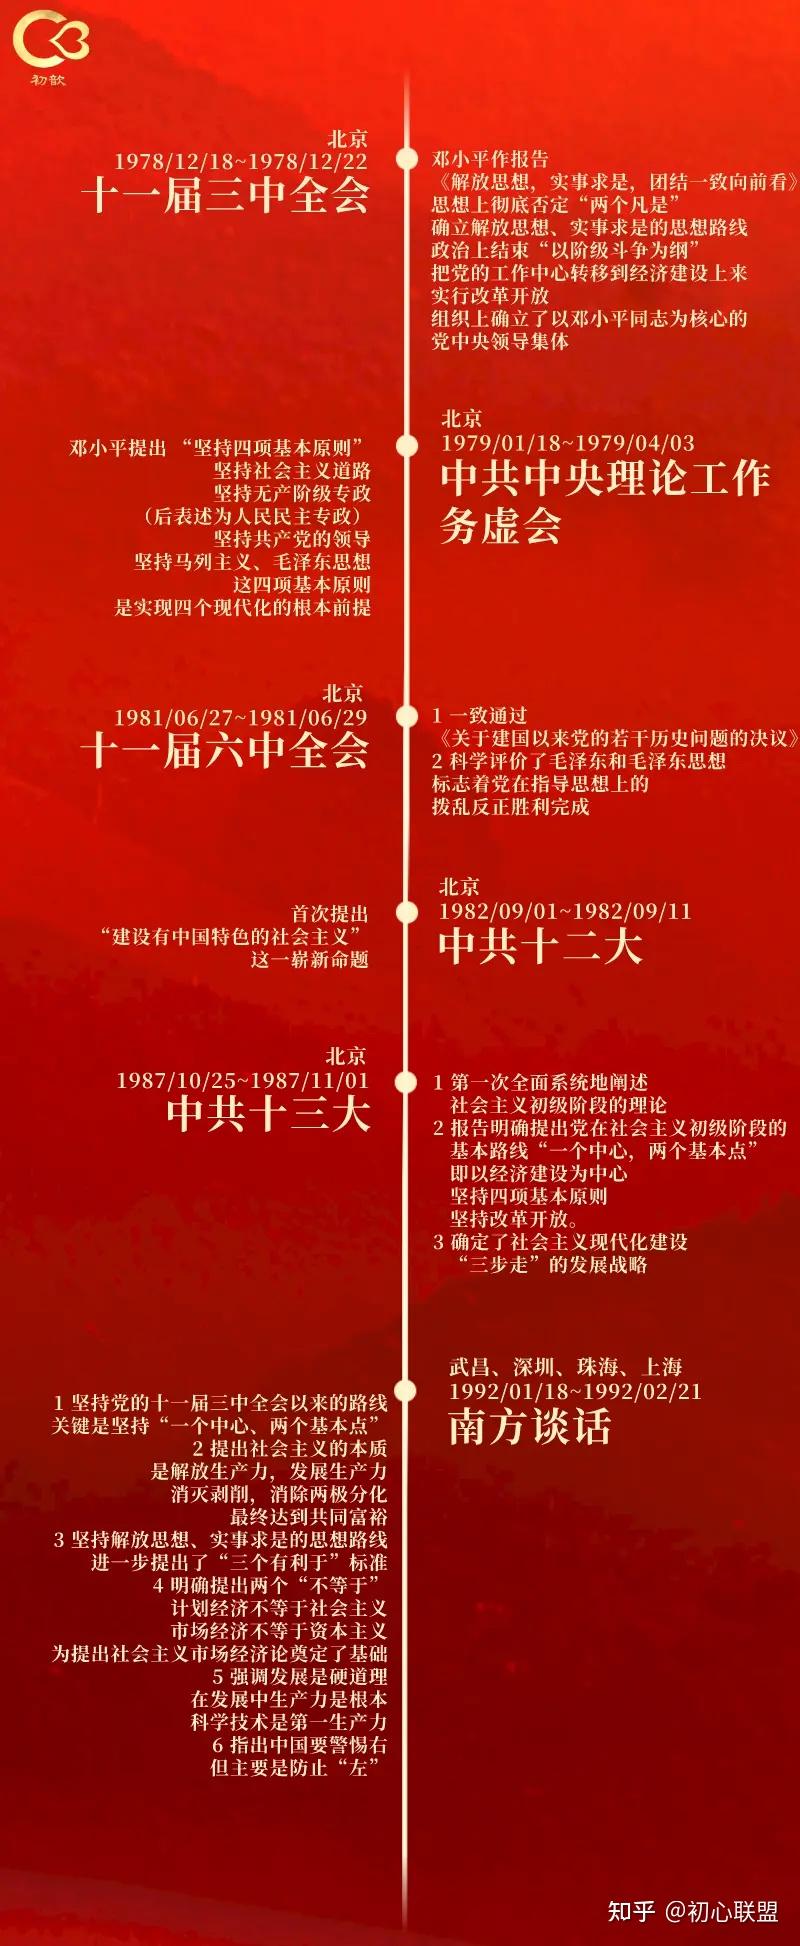 【建党100周年特别专题(二)】新中国成立后的发展历程回顾